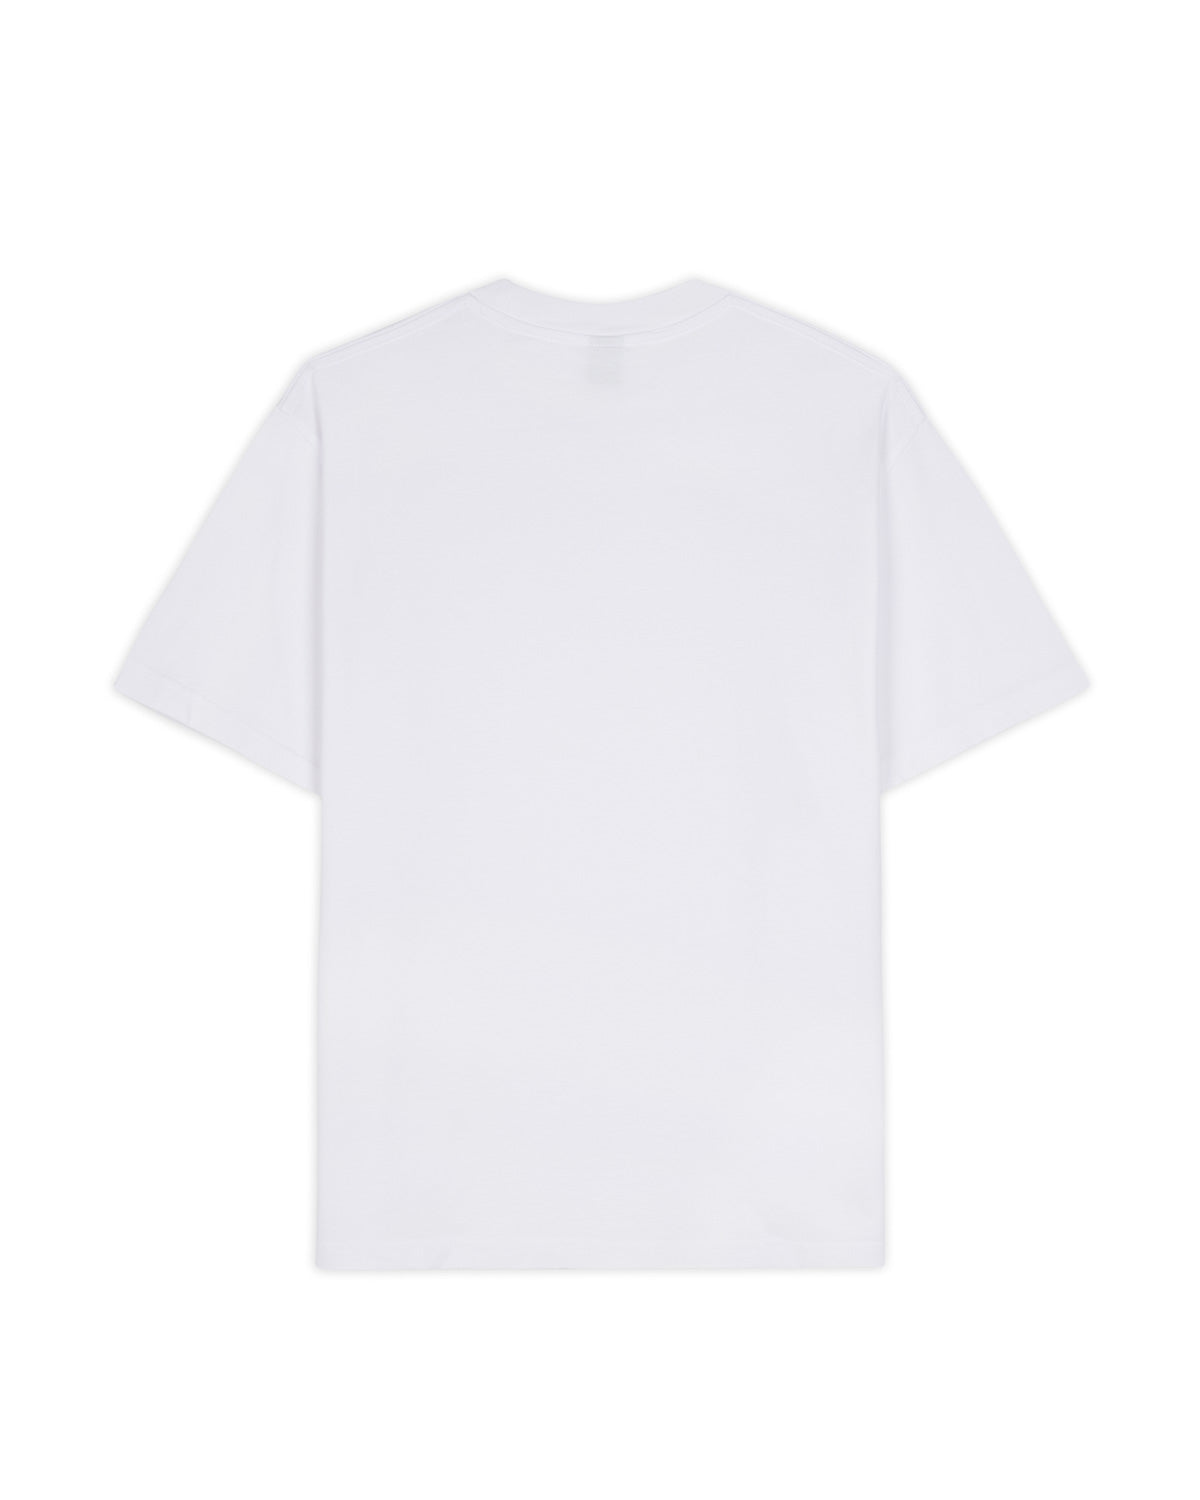 Gaspar Twig T-shirt - White 2